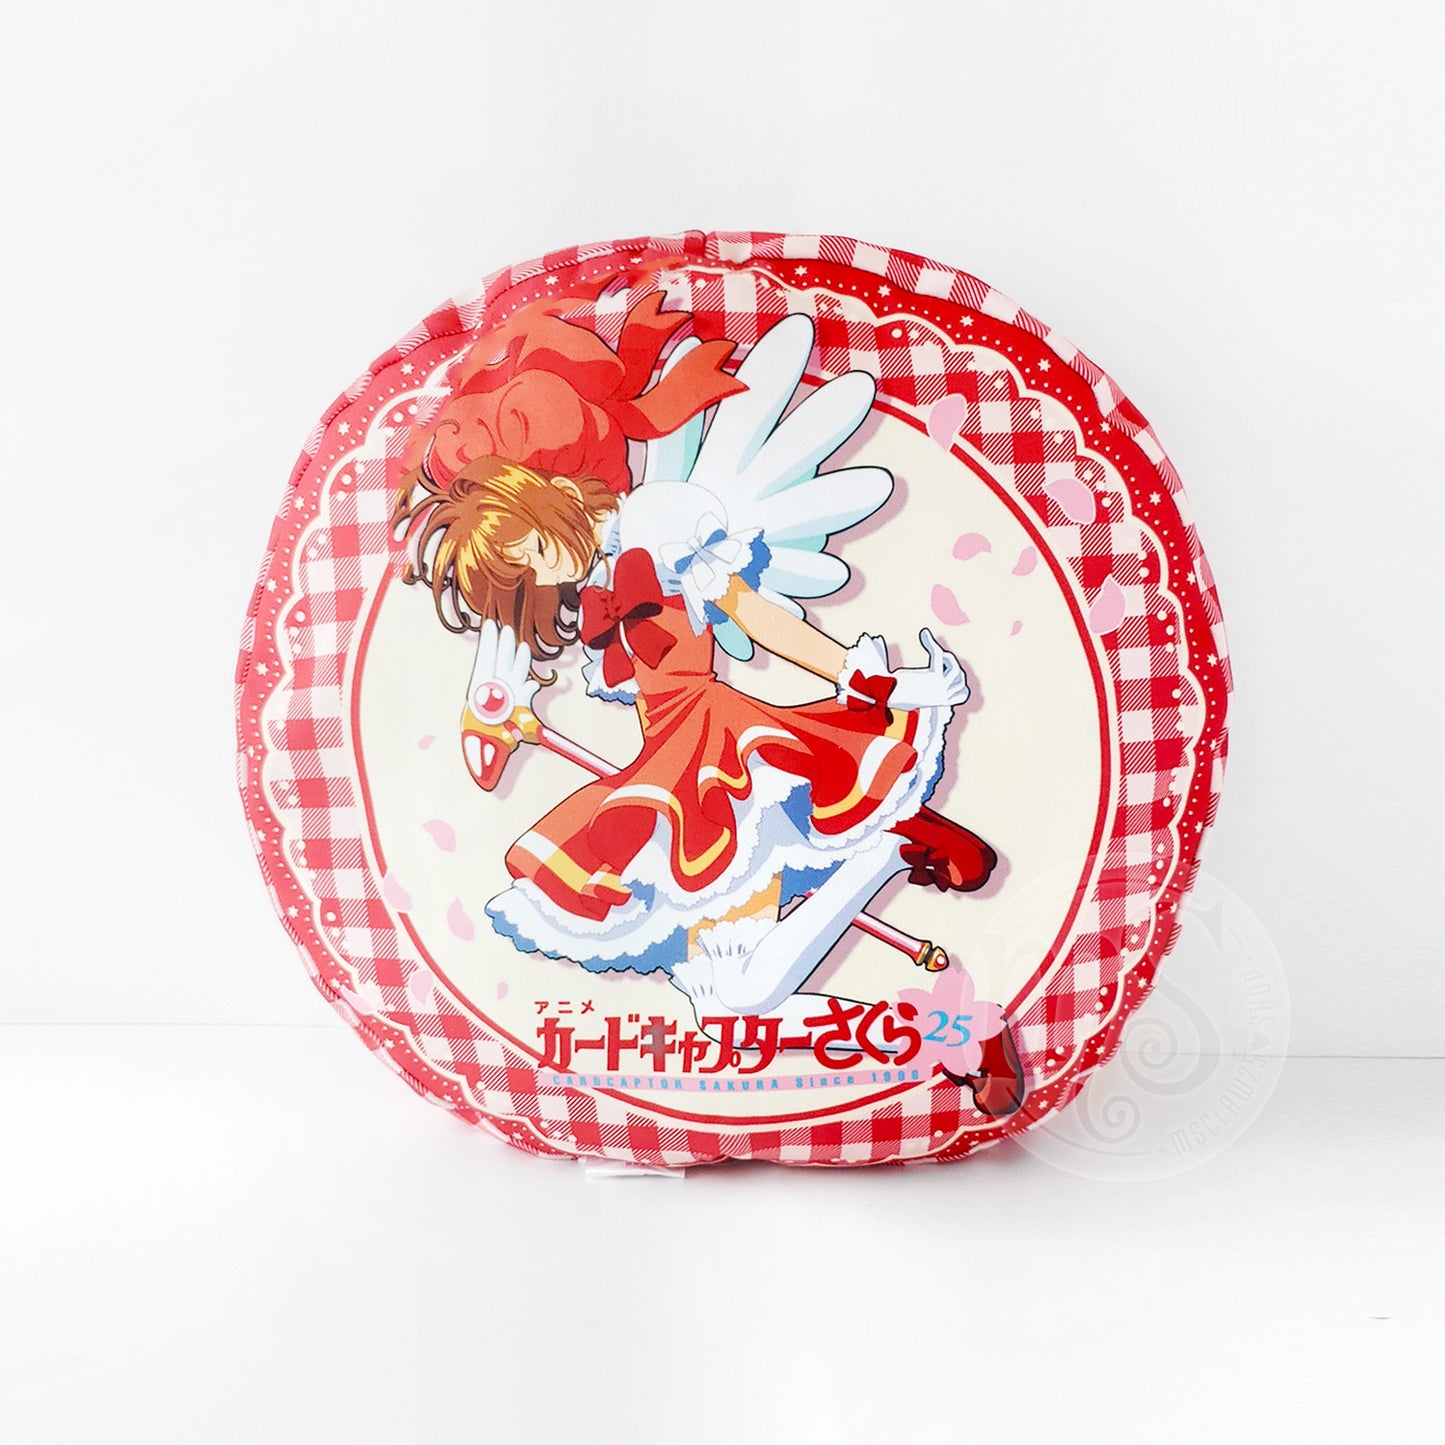 Cardcaptor Sakura | 25th Anniversary 12" (30cm) Cushion | 2023